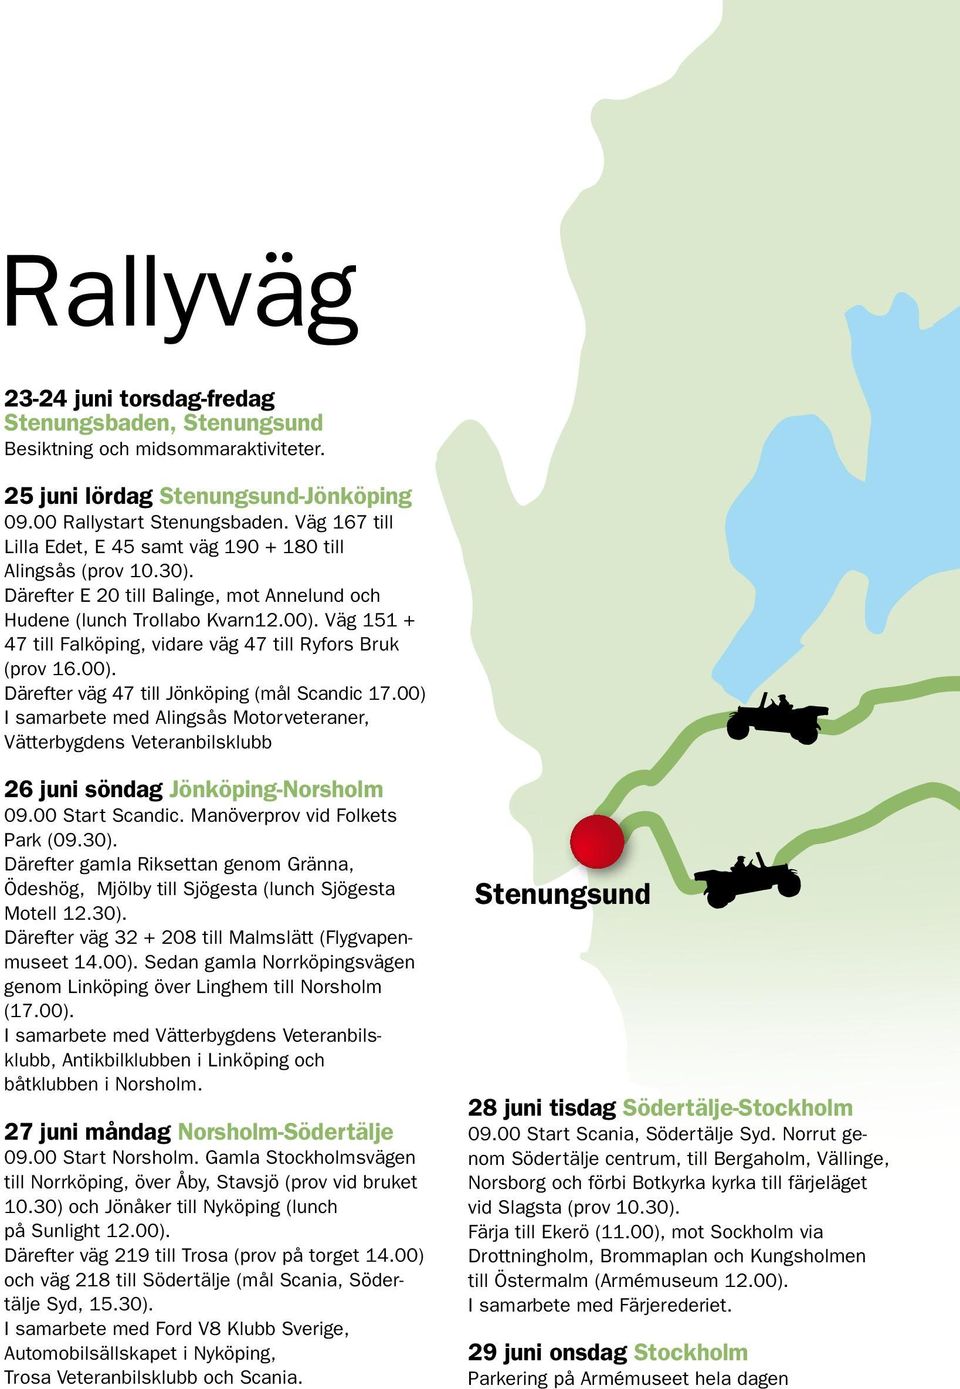 Väg 151 + 47 till Falköping, vidare väg 47 till Ryfors Bruk (prov 16.00). Därefter väg 47 till Jönköping (mål Scandic 17.